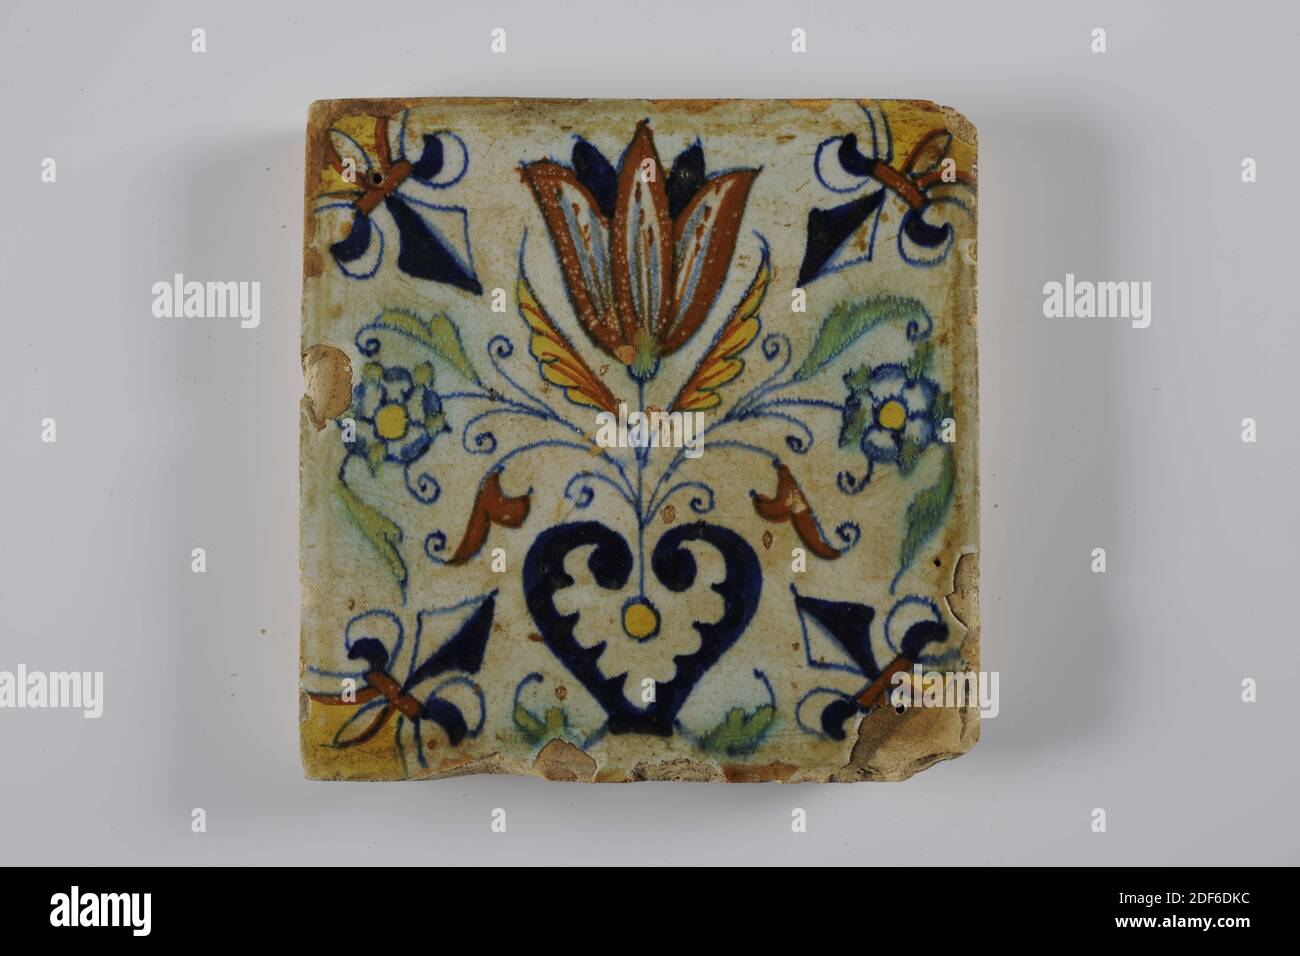 Carreau mural, Anonyme, entre 1610-1650, glaçure d'étain, faïence, général: 13.6 x 13.6 x 1.8cm (136 x 136 x 18mm), tulipe, carreau mural de faïence recouvert de glaçure d'étain. Multicolore peint en bleu, vert, jaune et brun orange. Une fleur à trois est représentée au centre sur le carreau. La fleur centrale est une tulipe. Les trois fleurs viennent d'un coeur. La tuile a un lis comme un motif de coin, 1995 Banque D'Images